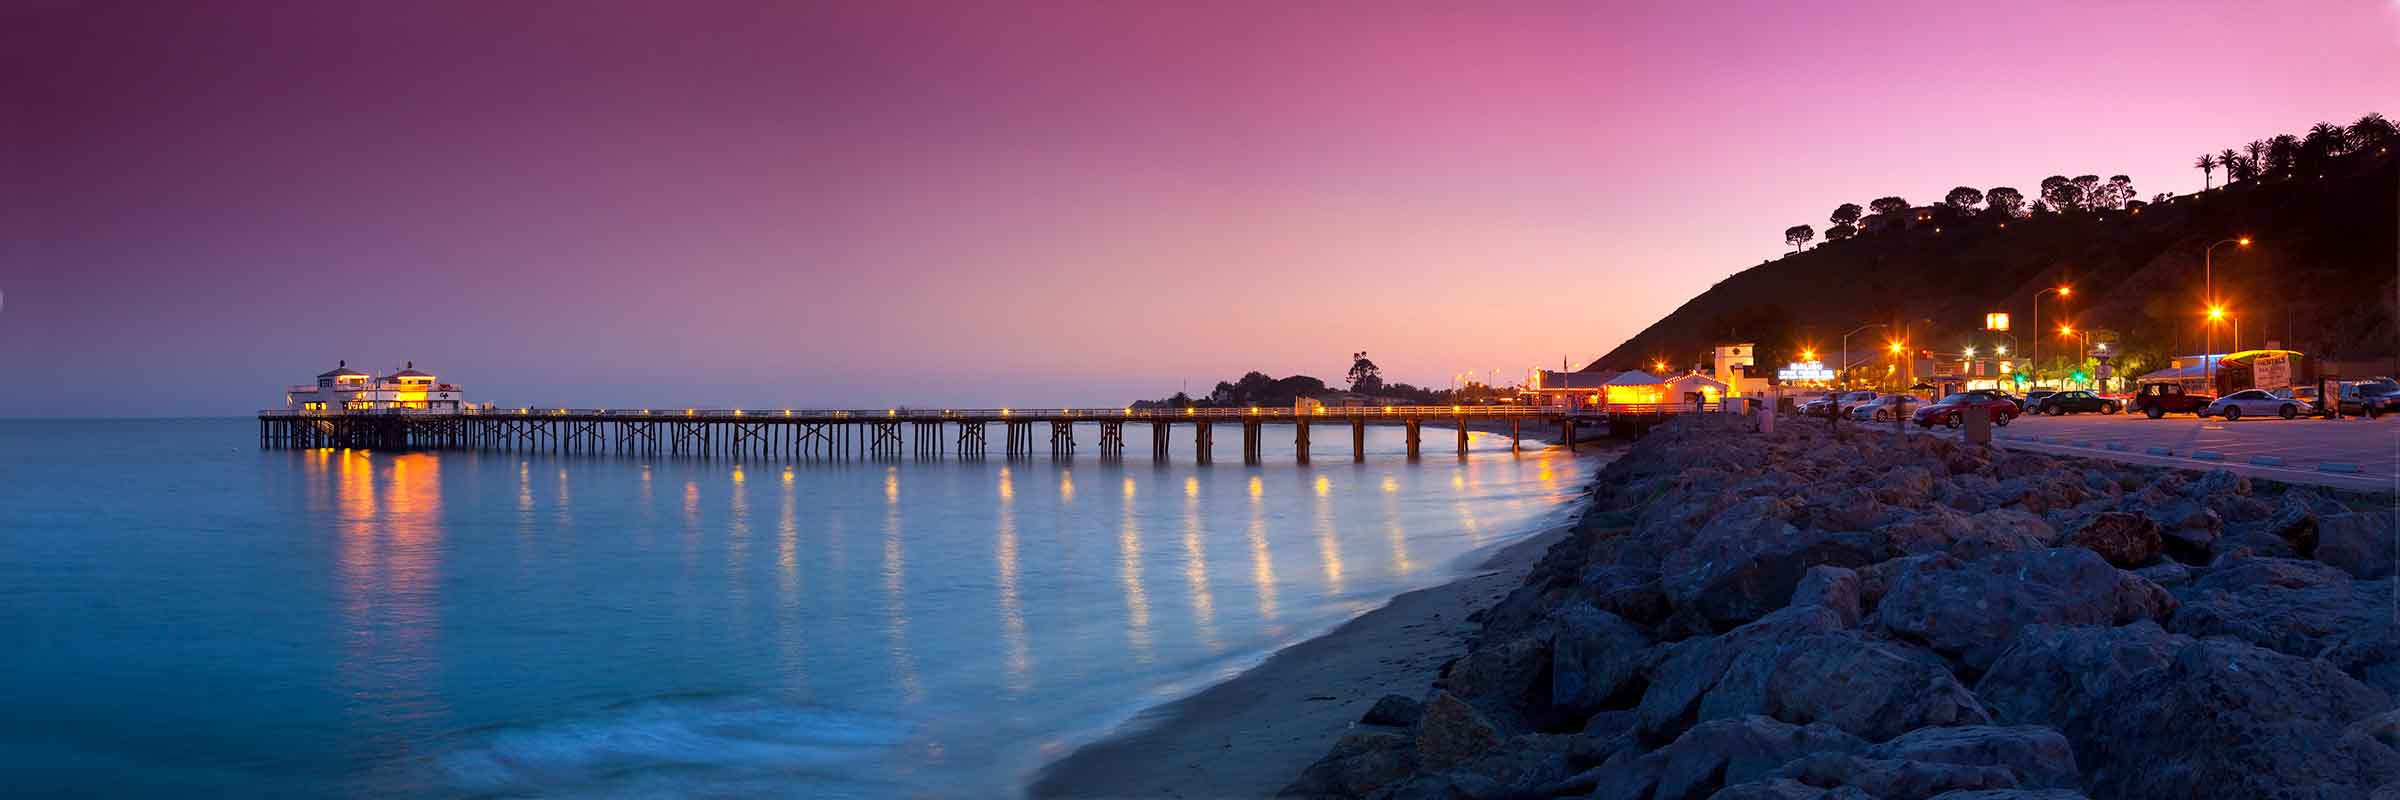 Malibu Pier Sunset – Sean Davey Photography